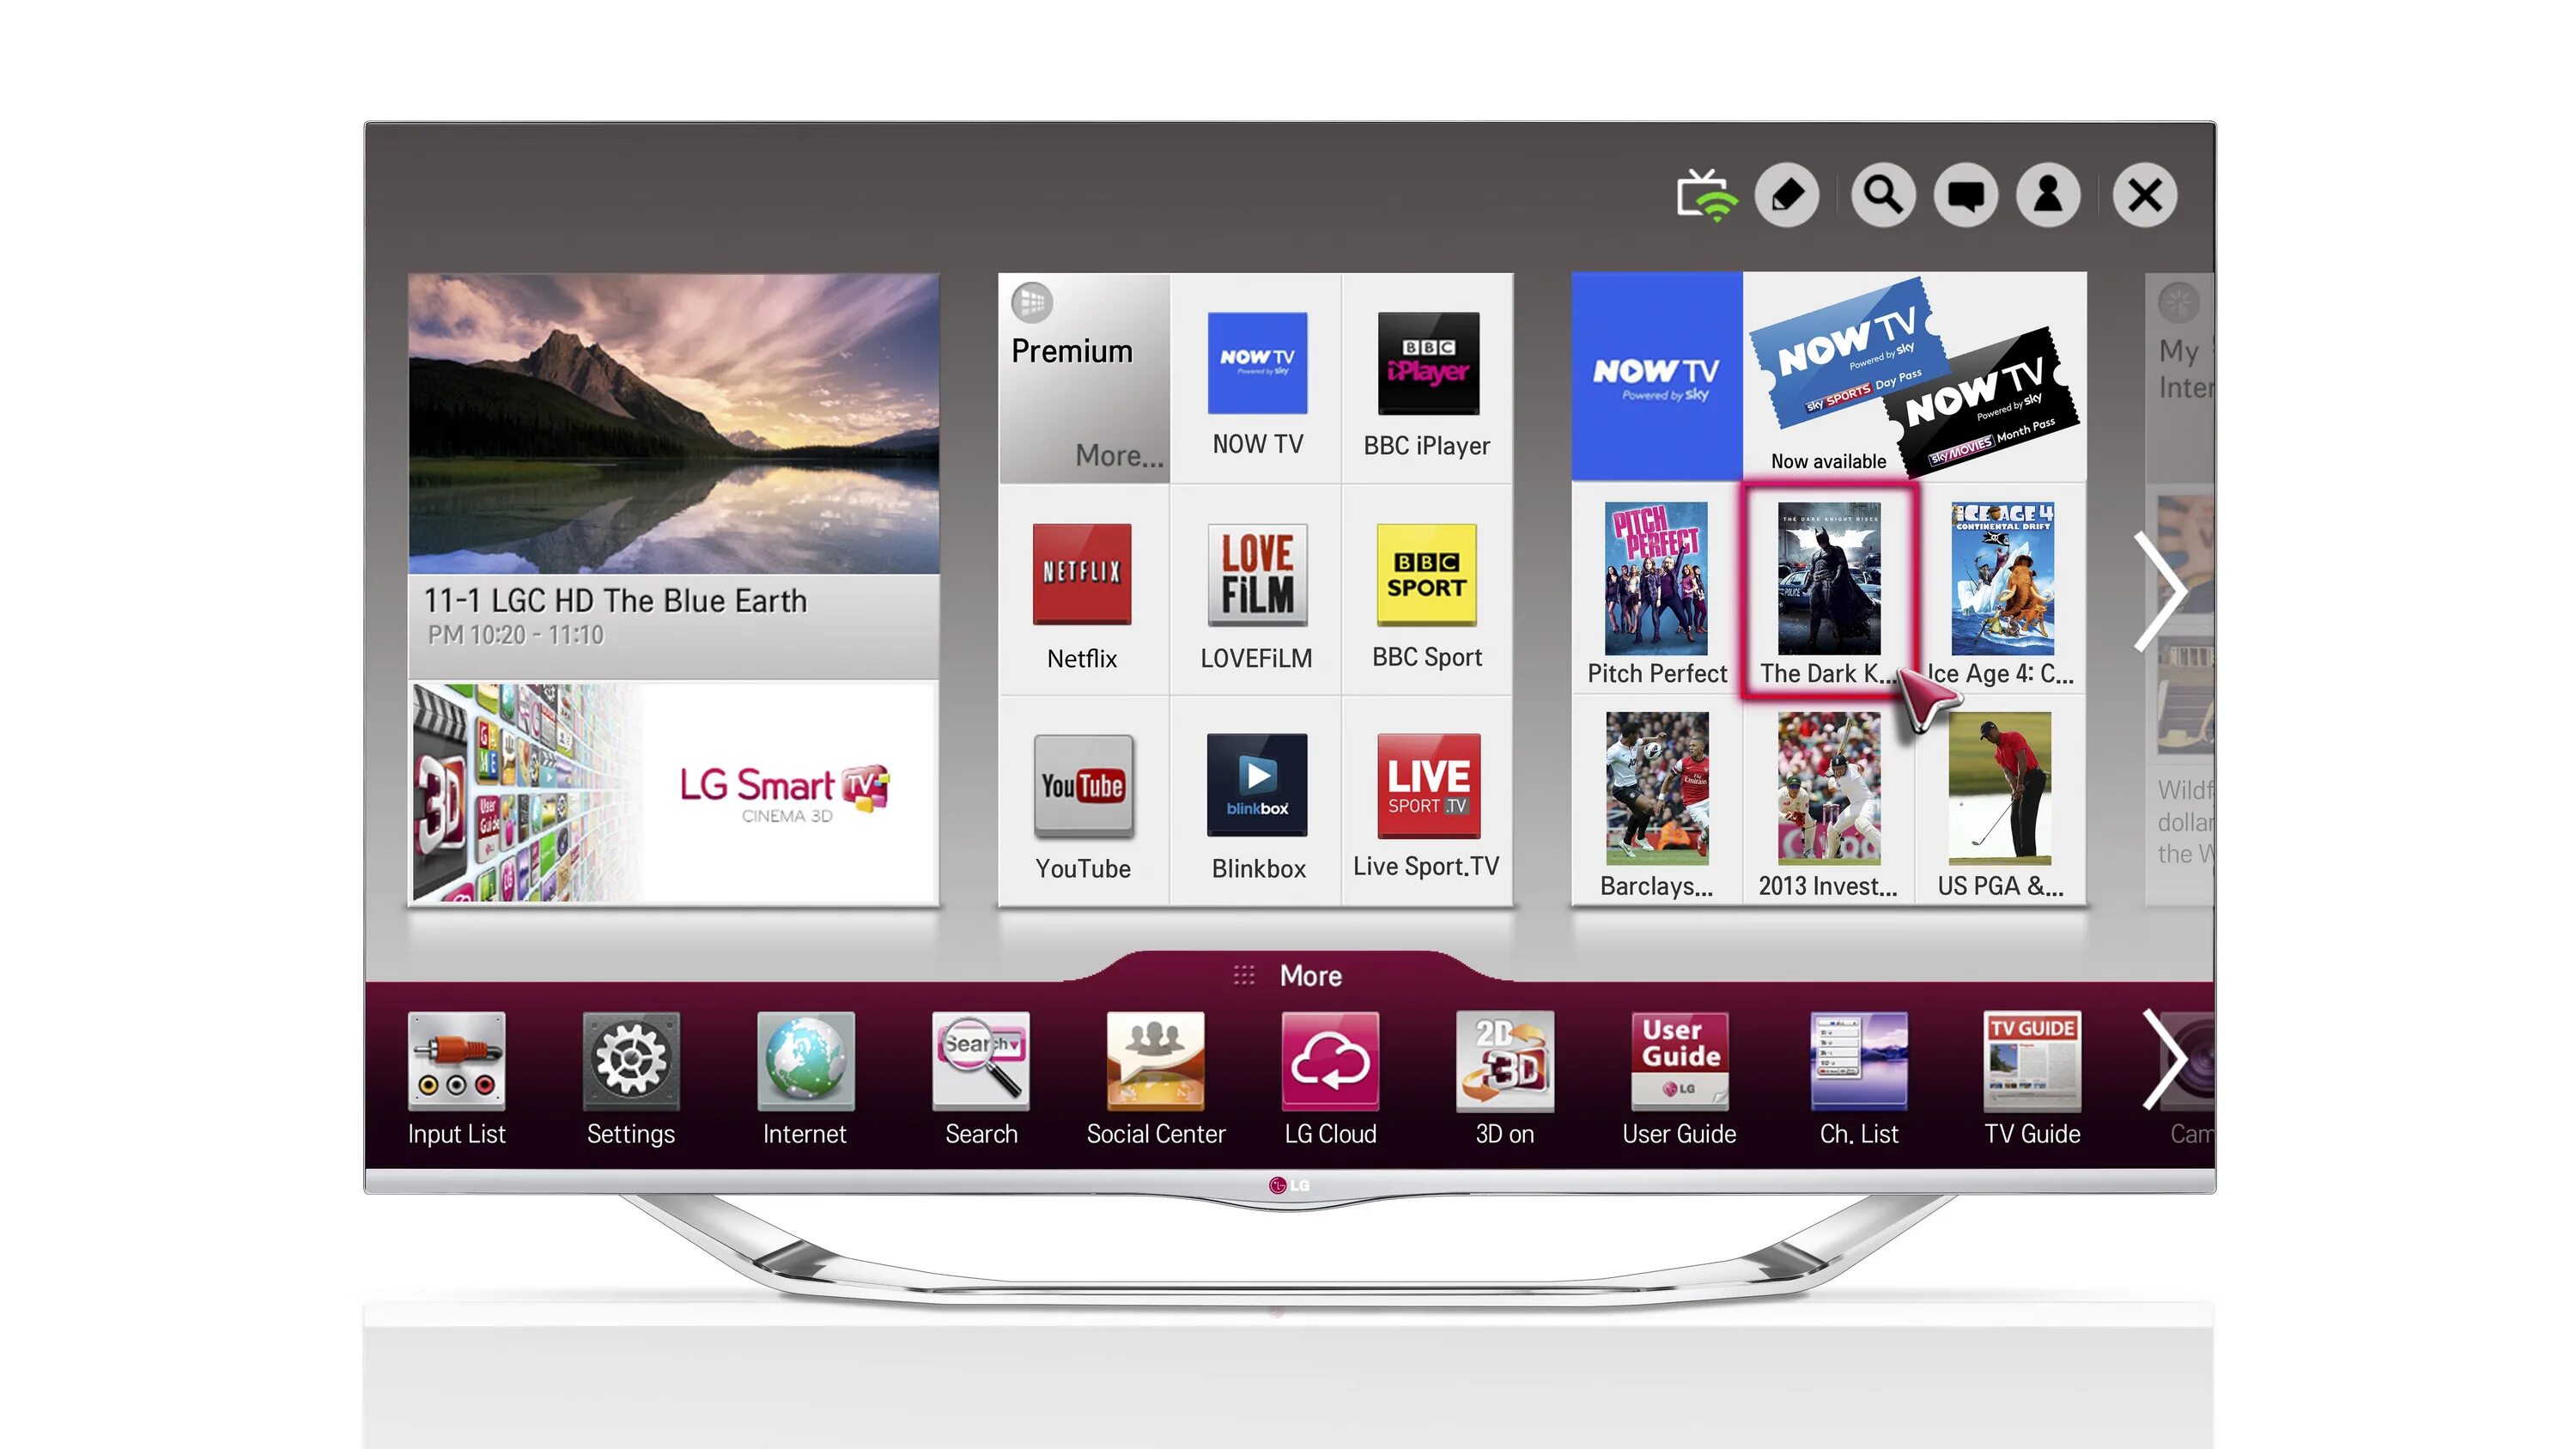 LG Smart TV 2013. Телевизор LG Smart TV 2013 года. Телевизор LG со смарт ТВ 2013 года. ТВ LG смарт ТВ 3 D 2013 года. Последняя версия телевизора lg